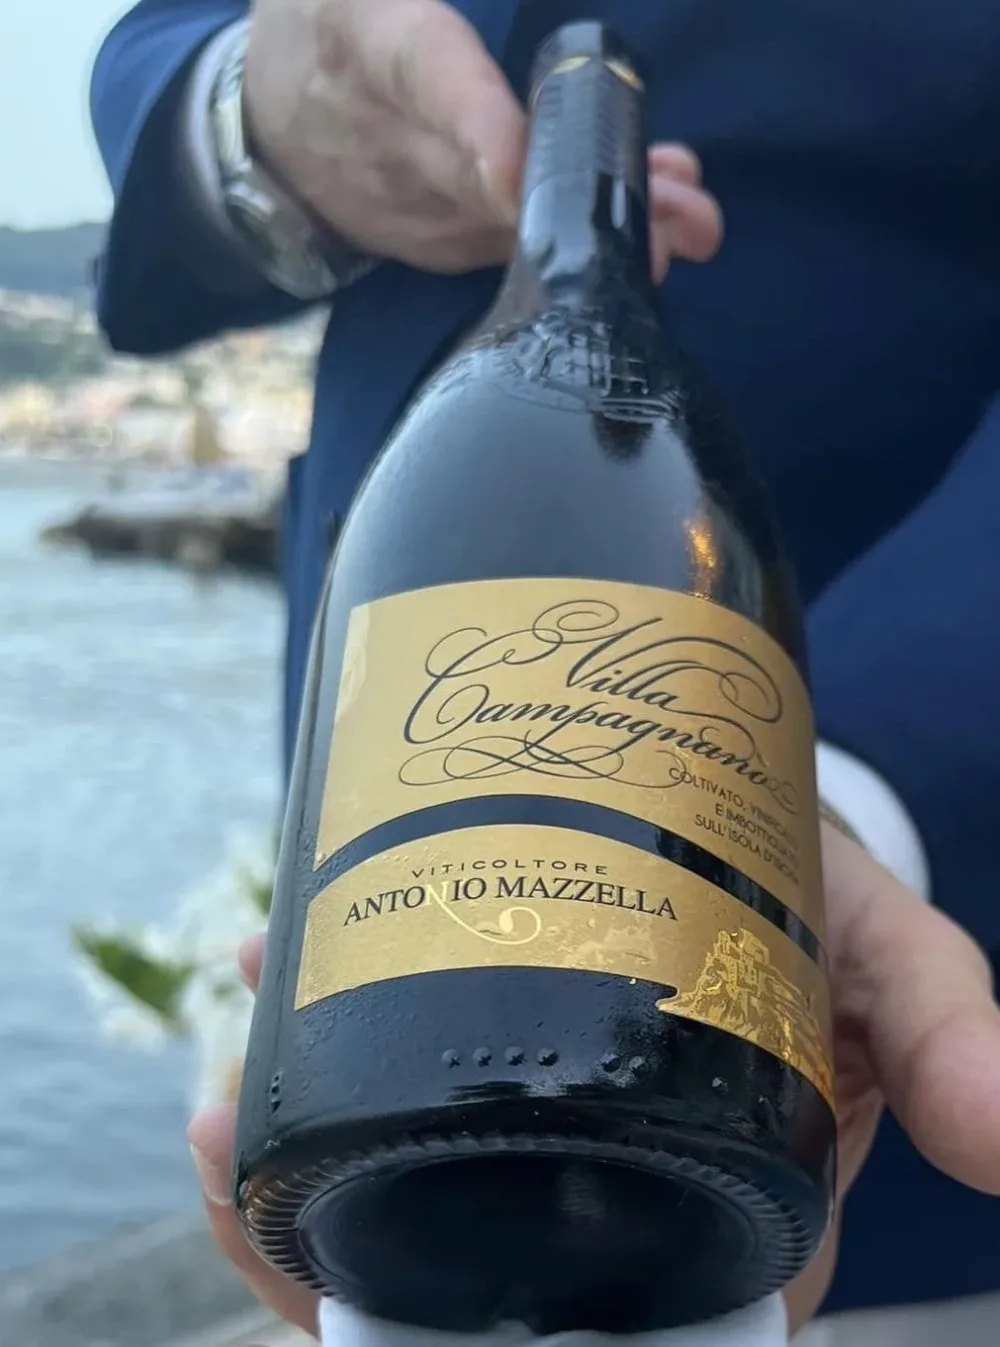  Indaco a Ischia - Aperitivo con il vino di Cantine Antonio Mazzella dal 1940 - Ischia